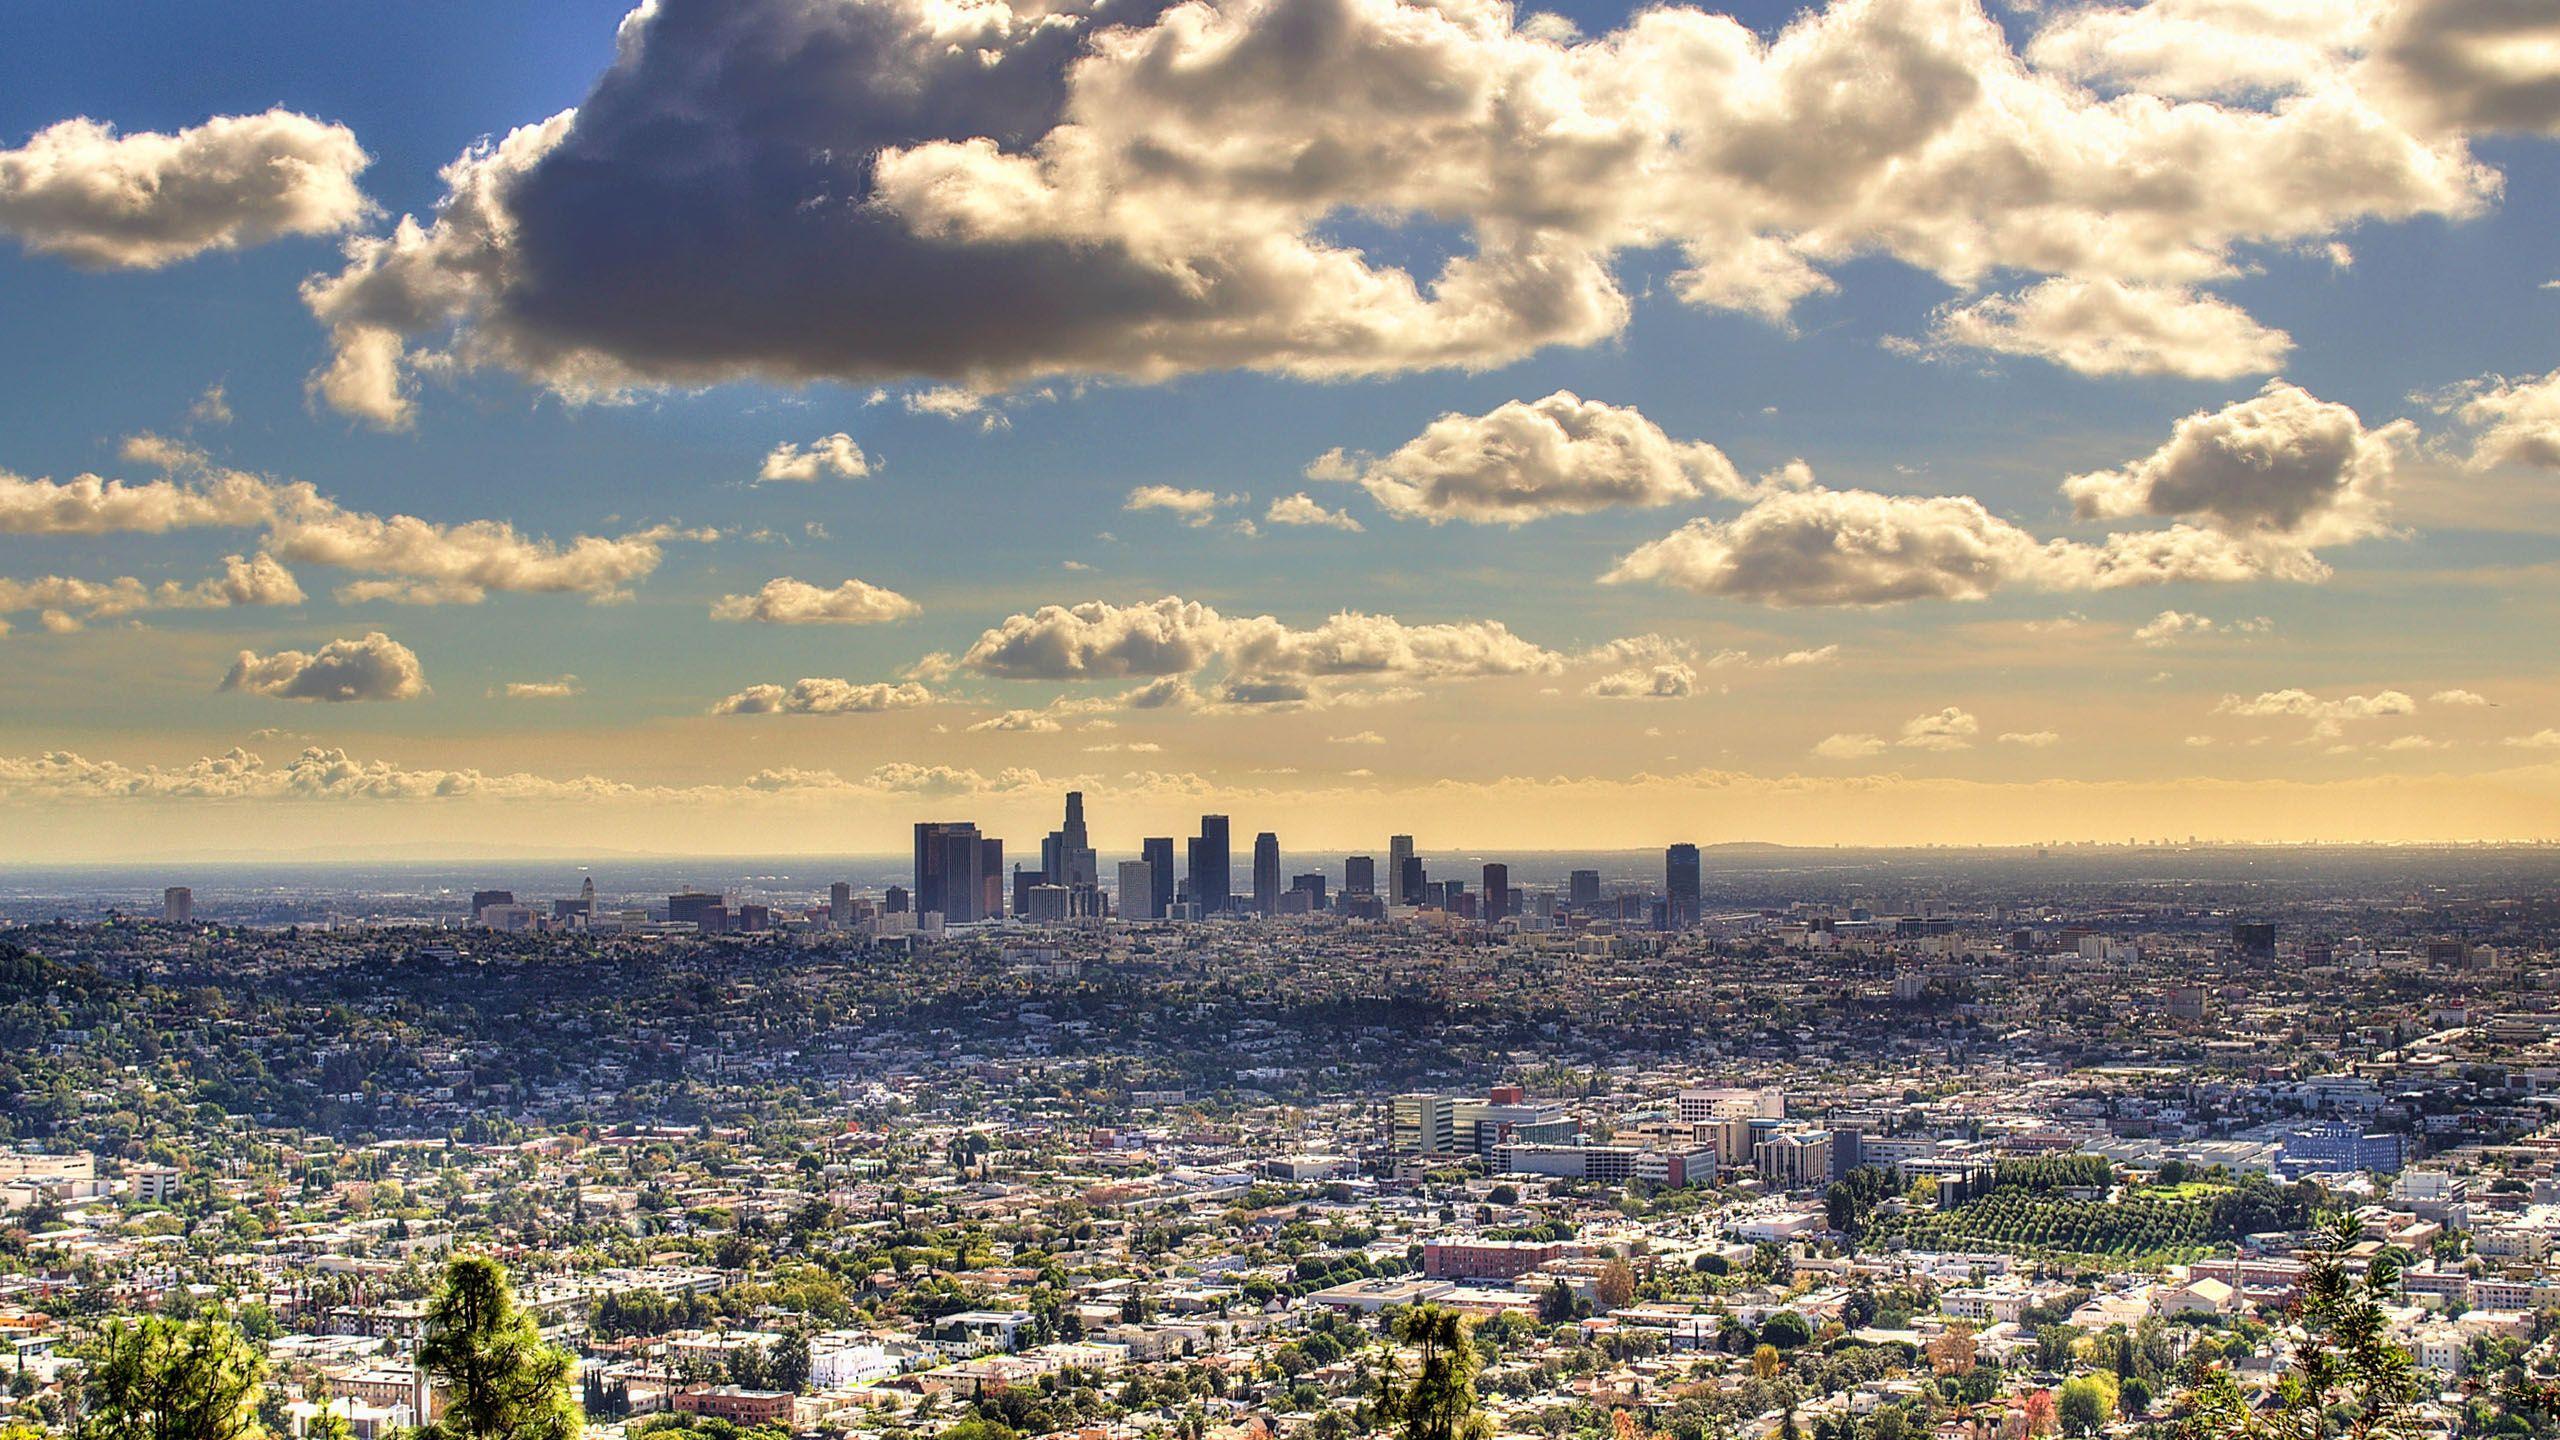 Bạn đam mê văn hóa và thiên nhiên của Los Angeles? Chúng tôi mang đến cho bạn Hang Động Hình nền Desktop Los Angeles với những bức ảnh tuyệt đẹp và uốn khúc, đưa bạn đến với những cung đường bí ẩn và nơi đất trời hoang vu tuyệt đẹp. Hãy cảm nhận vẻ đẹp tự nhiên hoang sơ của thành phố này tại màn hình Desktop của bạn.